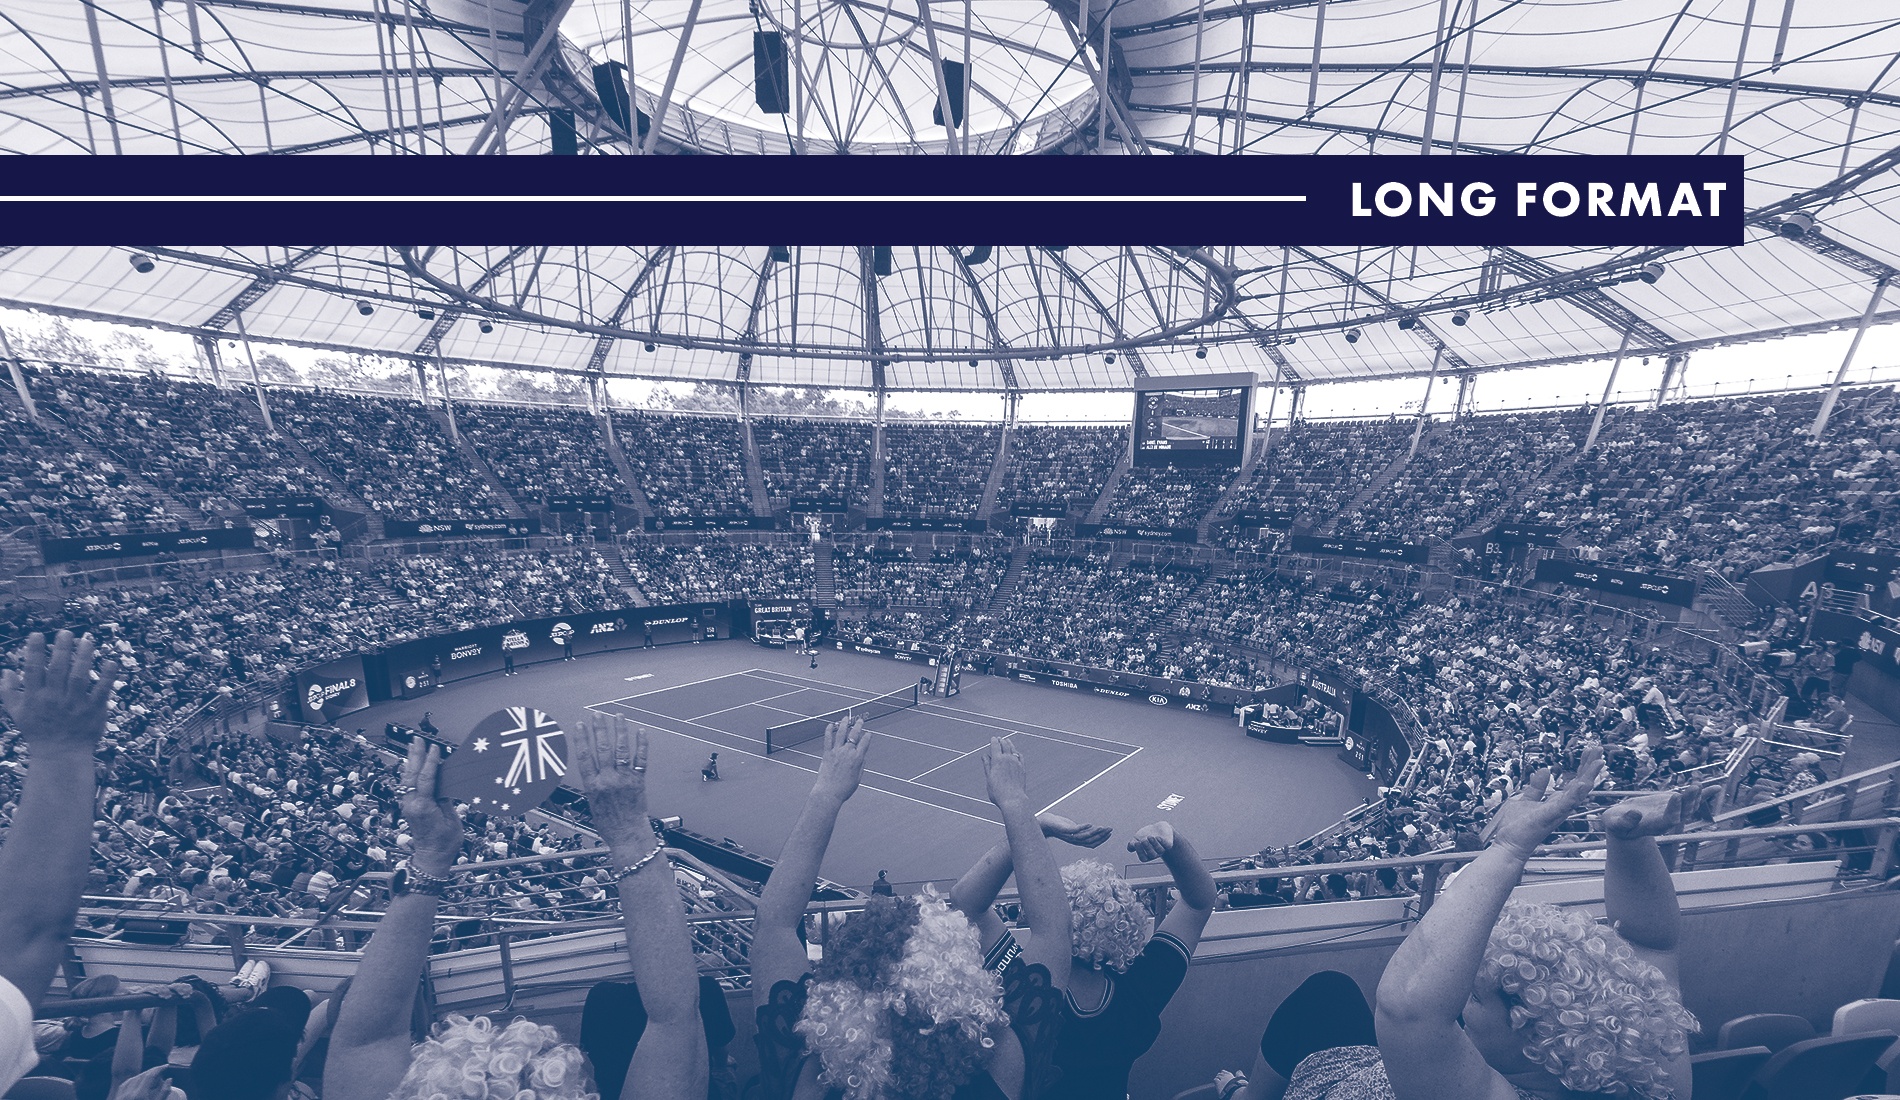 Long Format : A quoi ressemblera le tennis ? (Partie 2)